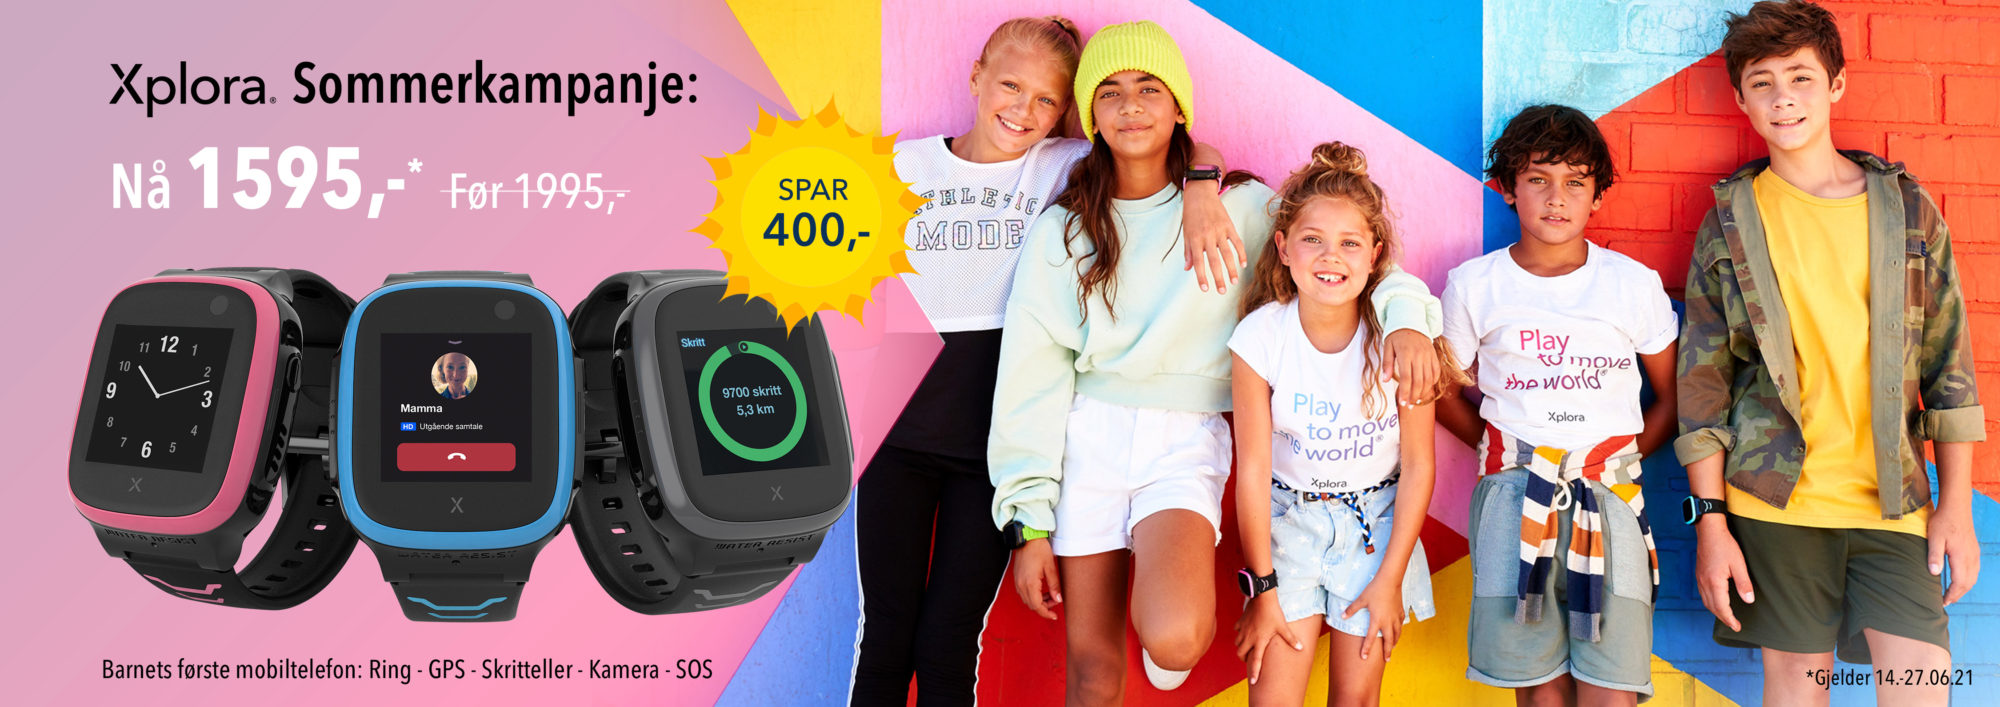 Sommerkampanje - 400 kr i rabatt på smartklokke fra Xplora X5 PLAY